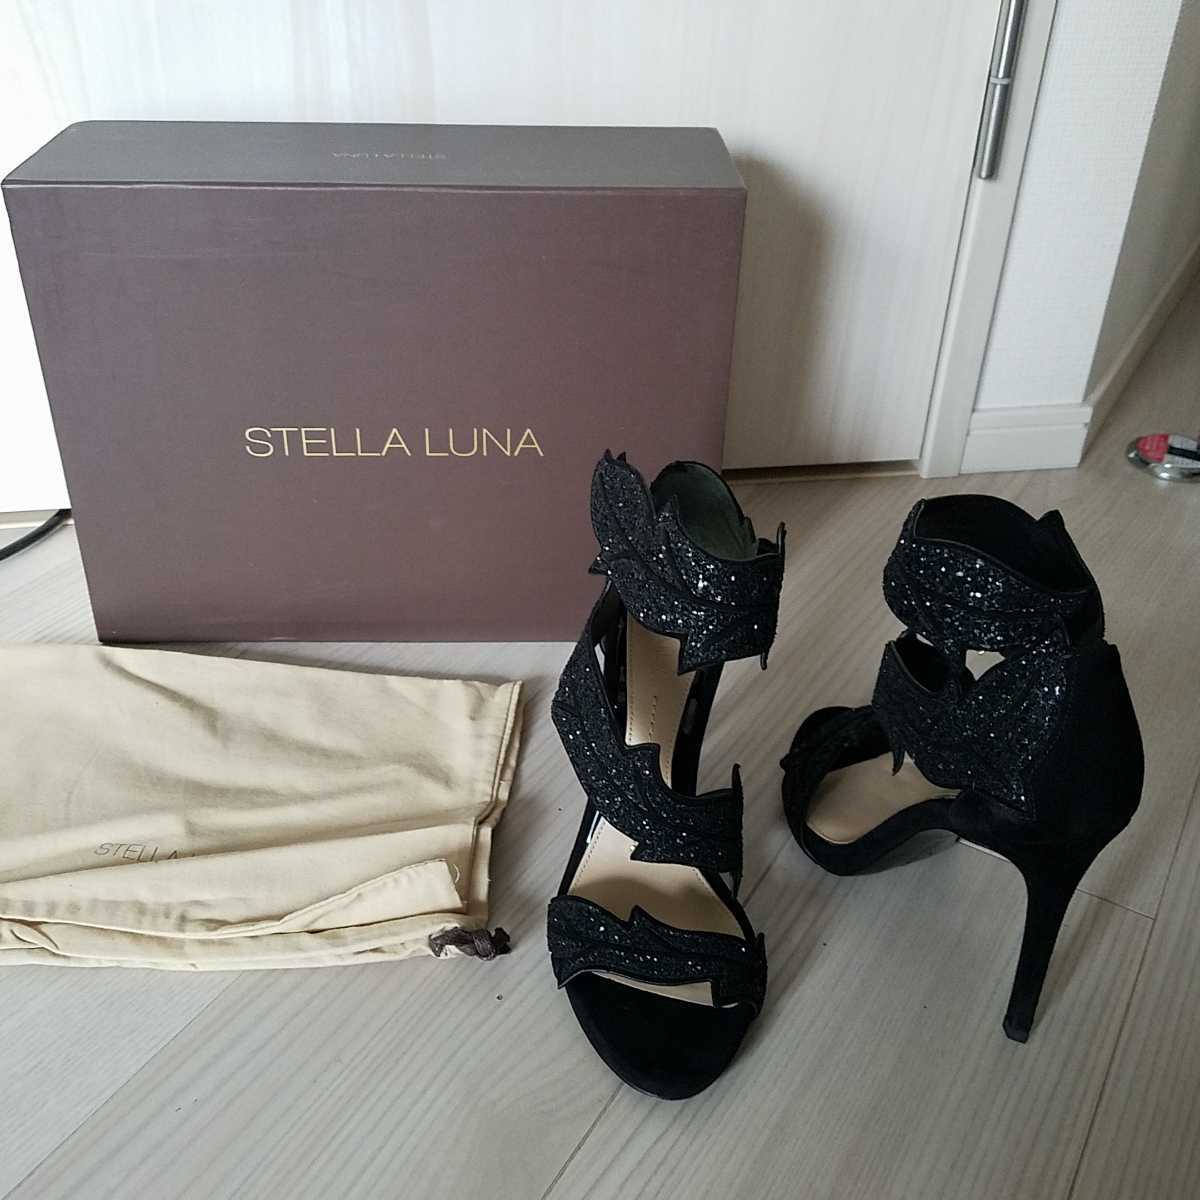 STELLA LUNA美品スパンコールハイヒールサンダル35黒 年間ランキング6年連続受賞 低価格の